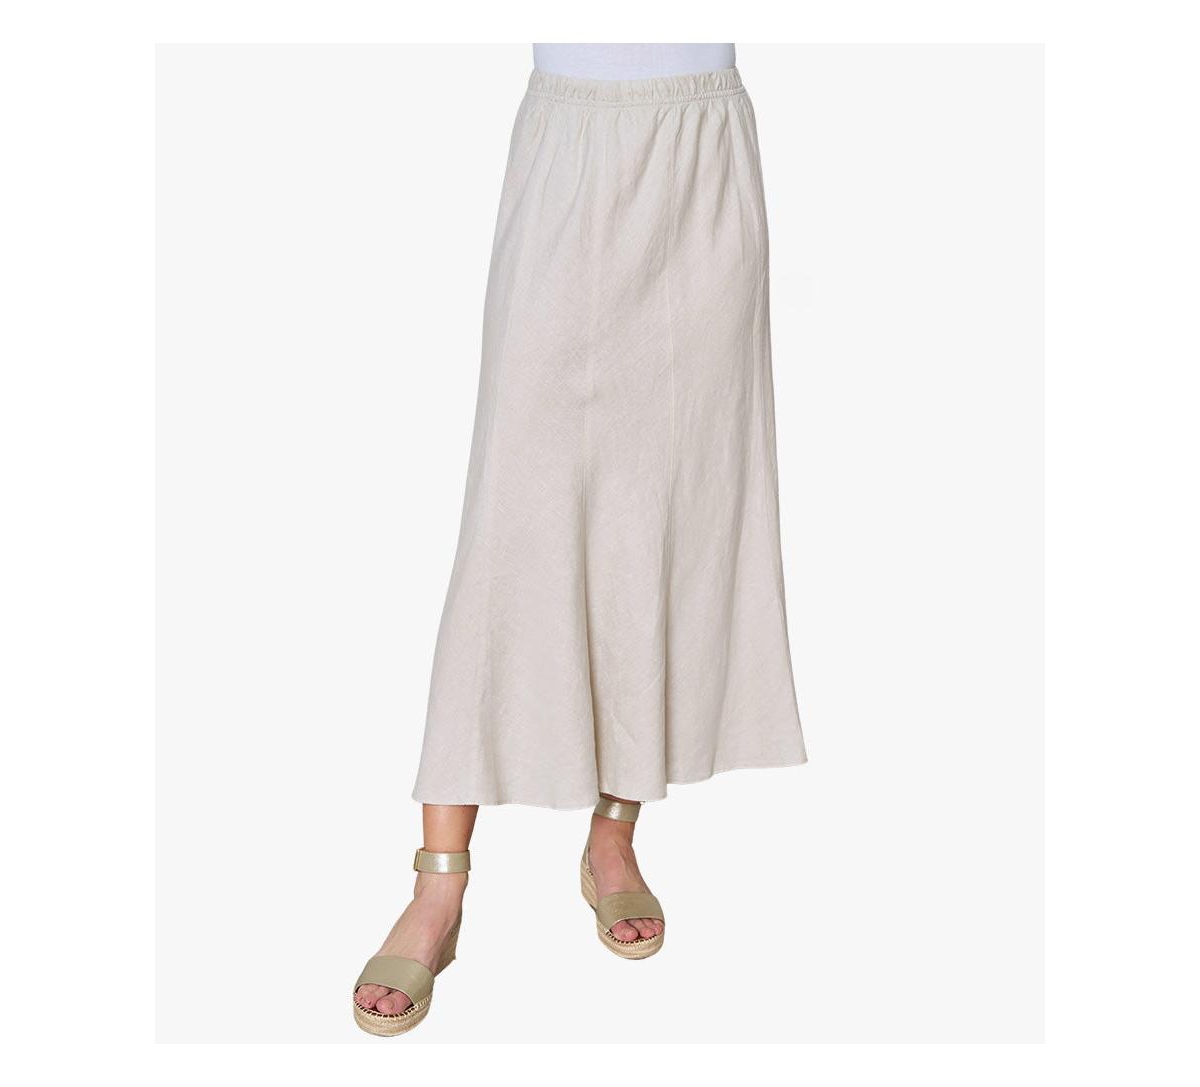 Women's Linen On The Move Skirt - Soft white